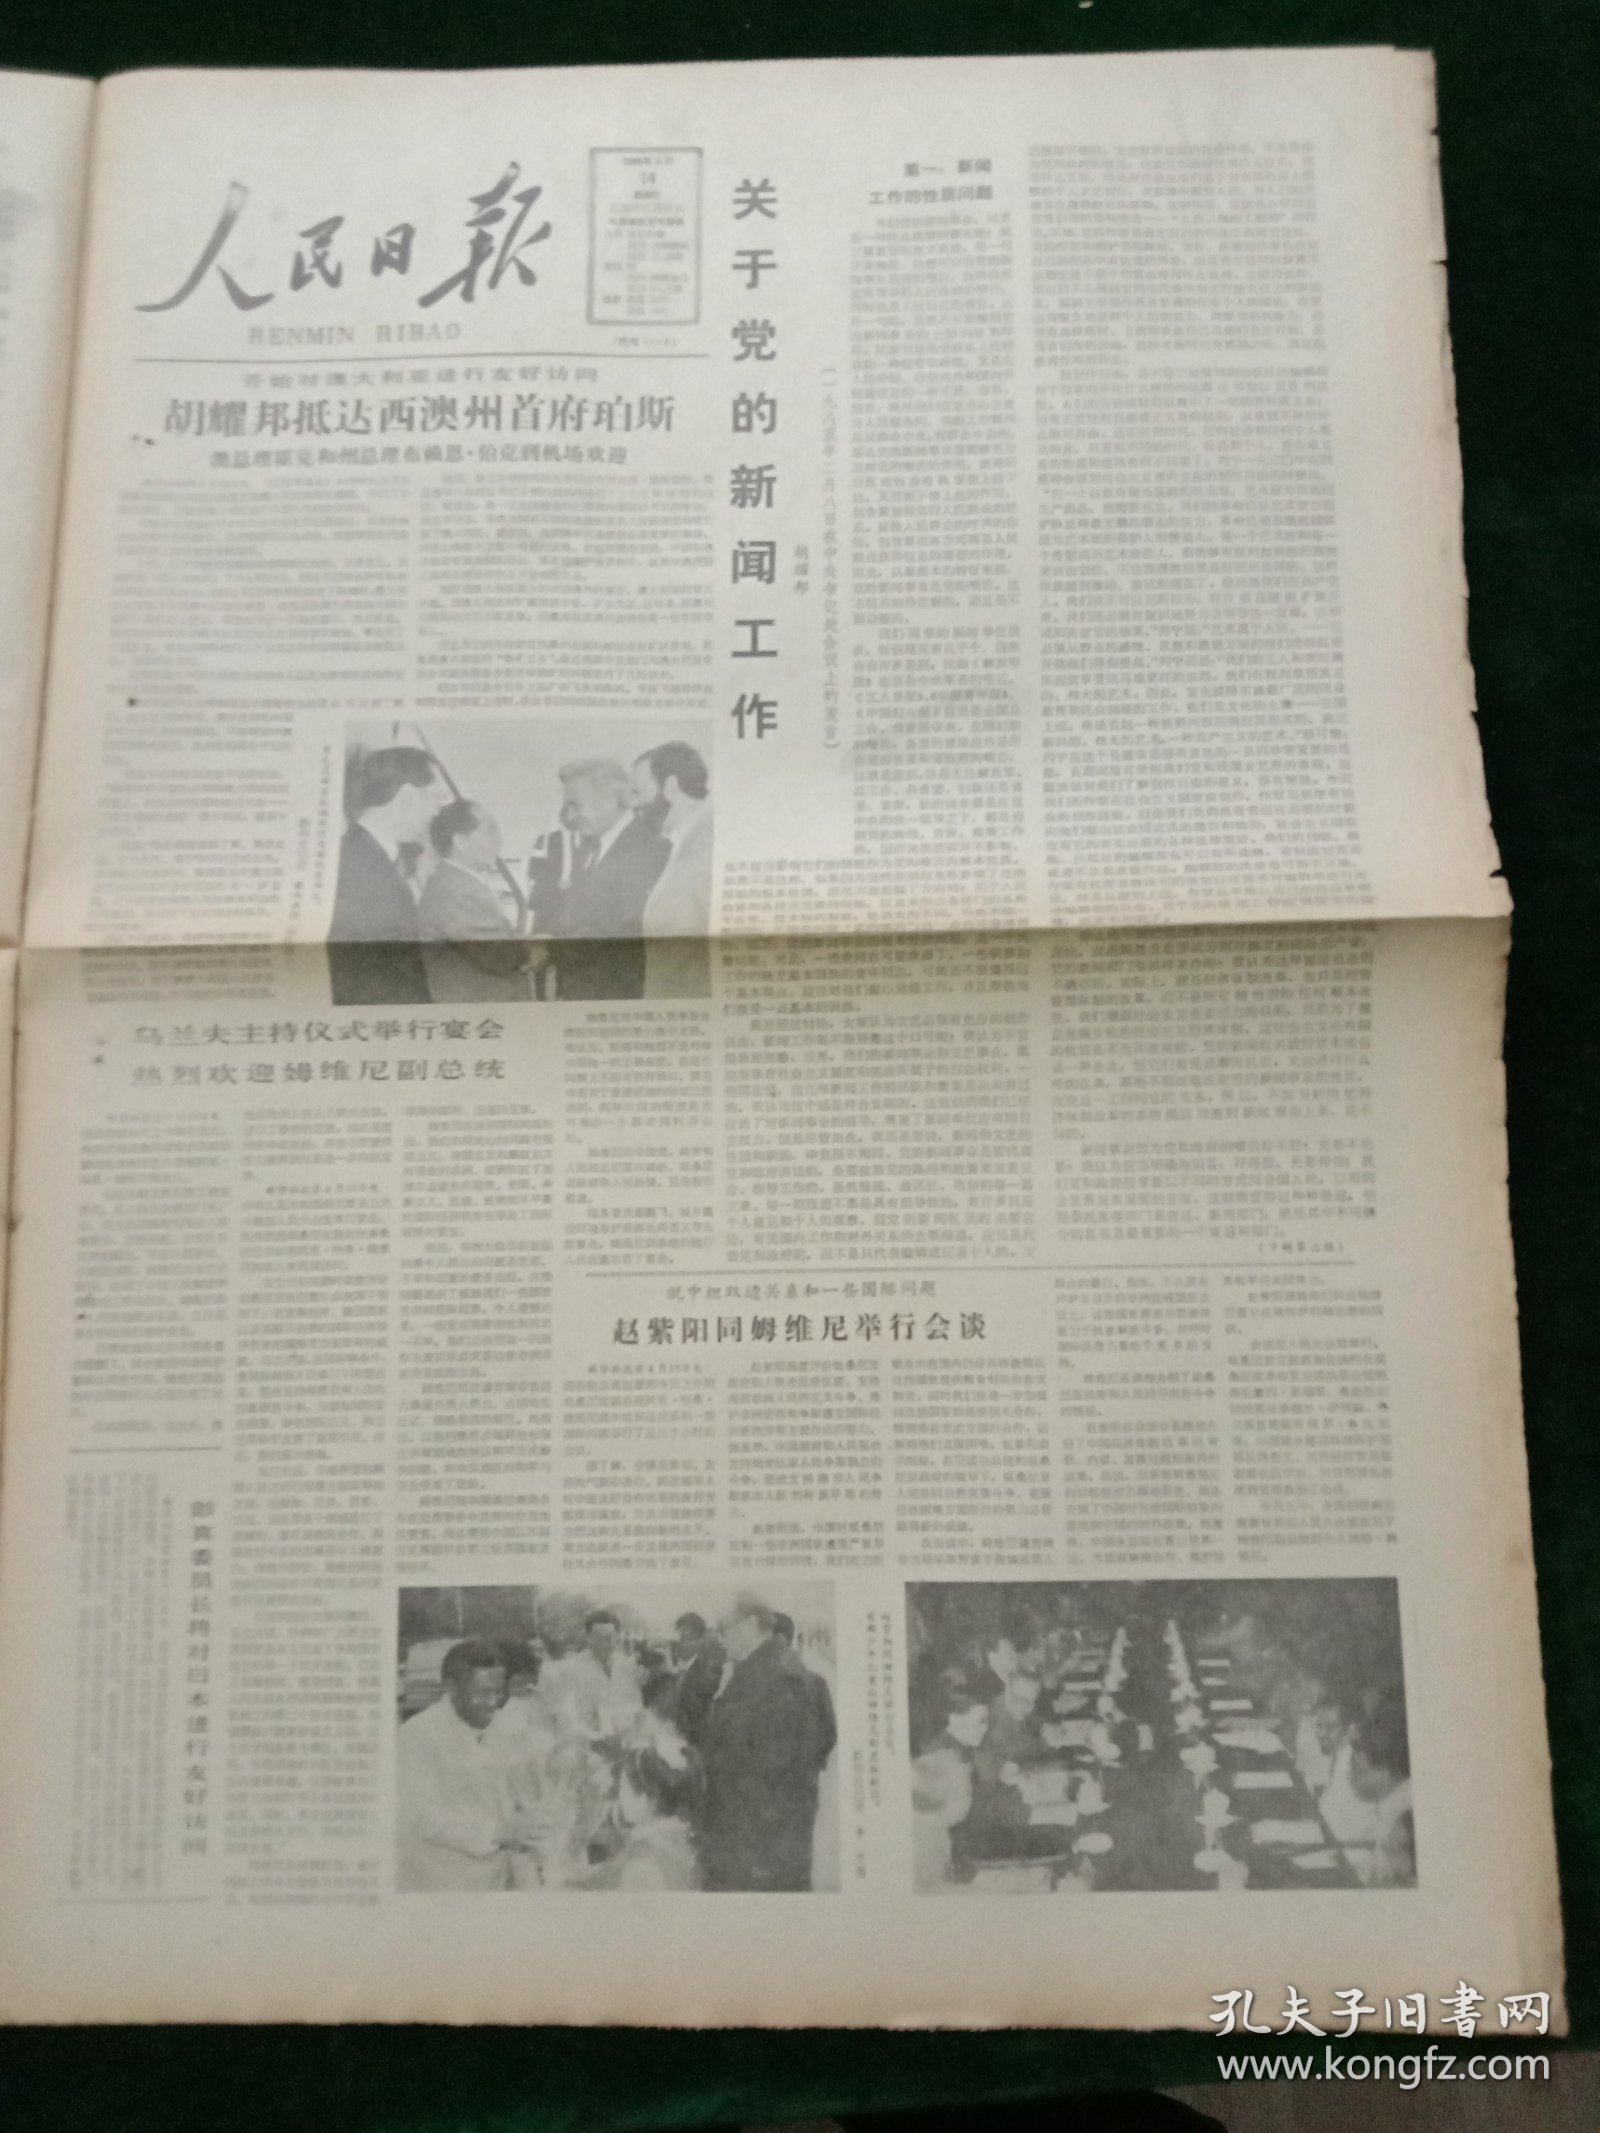 人民日报，1985年4月14日关于党的新闻工作（胡耀邦）；中华人民共和国继承法，其它详情见图，对开八版。